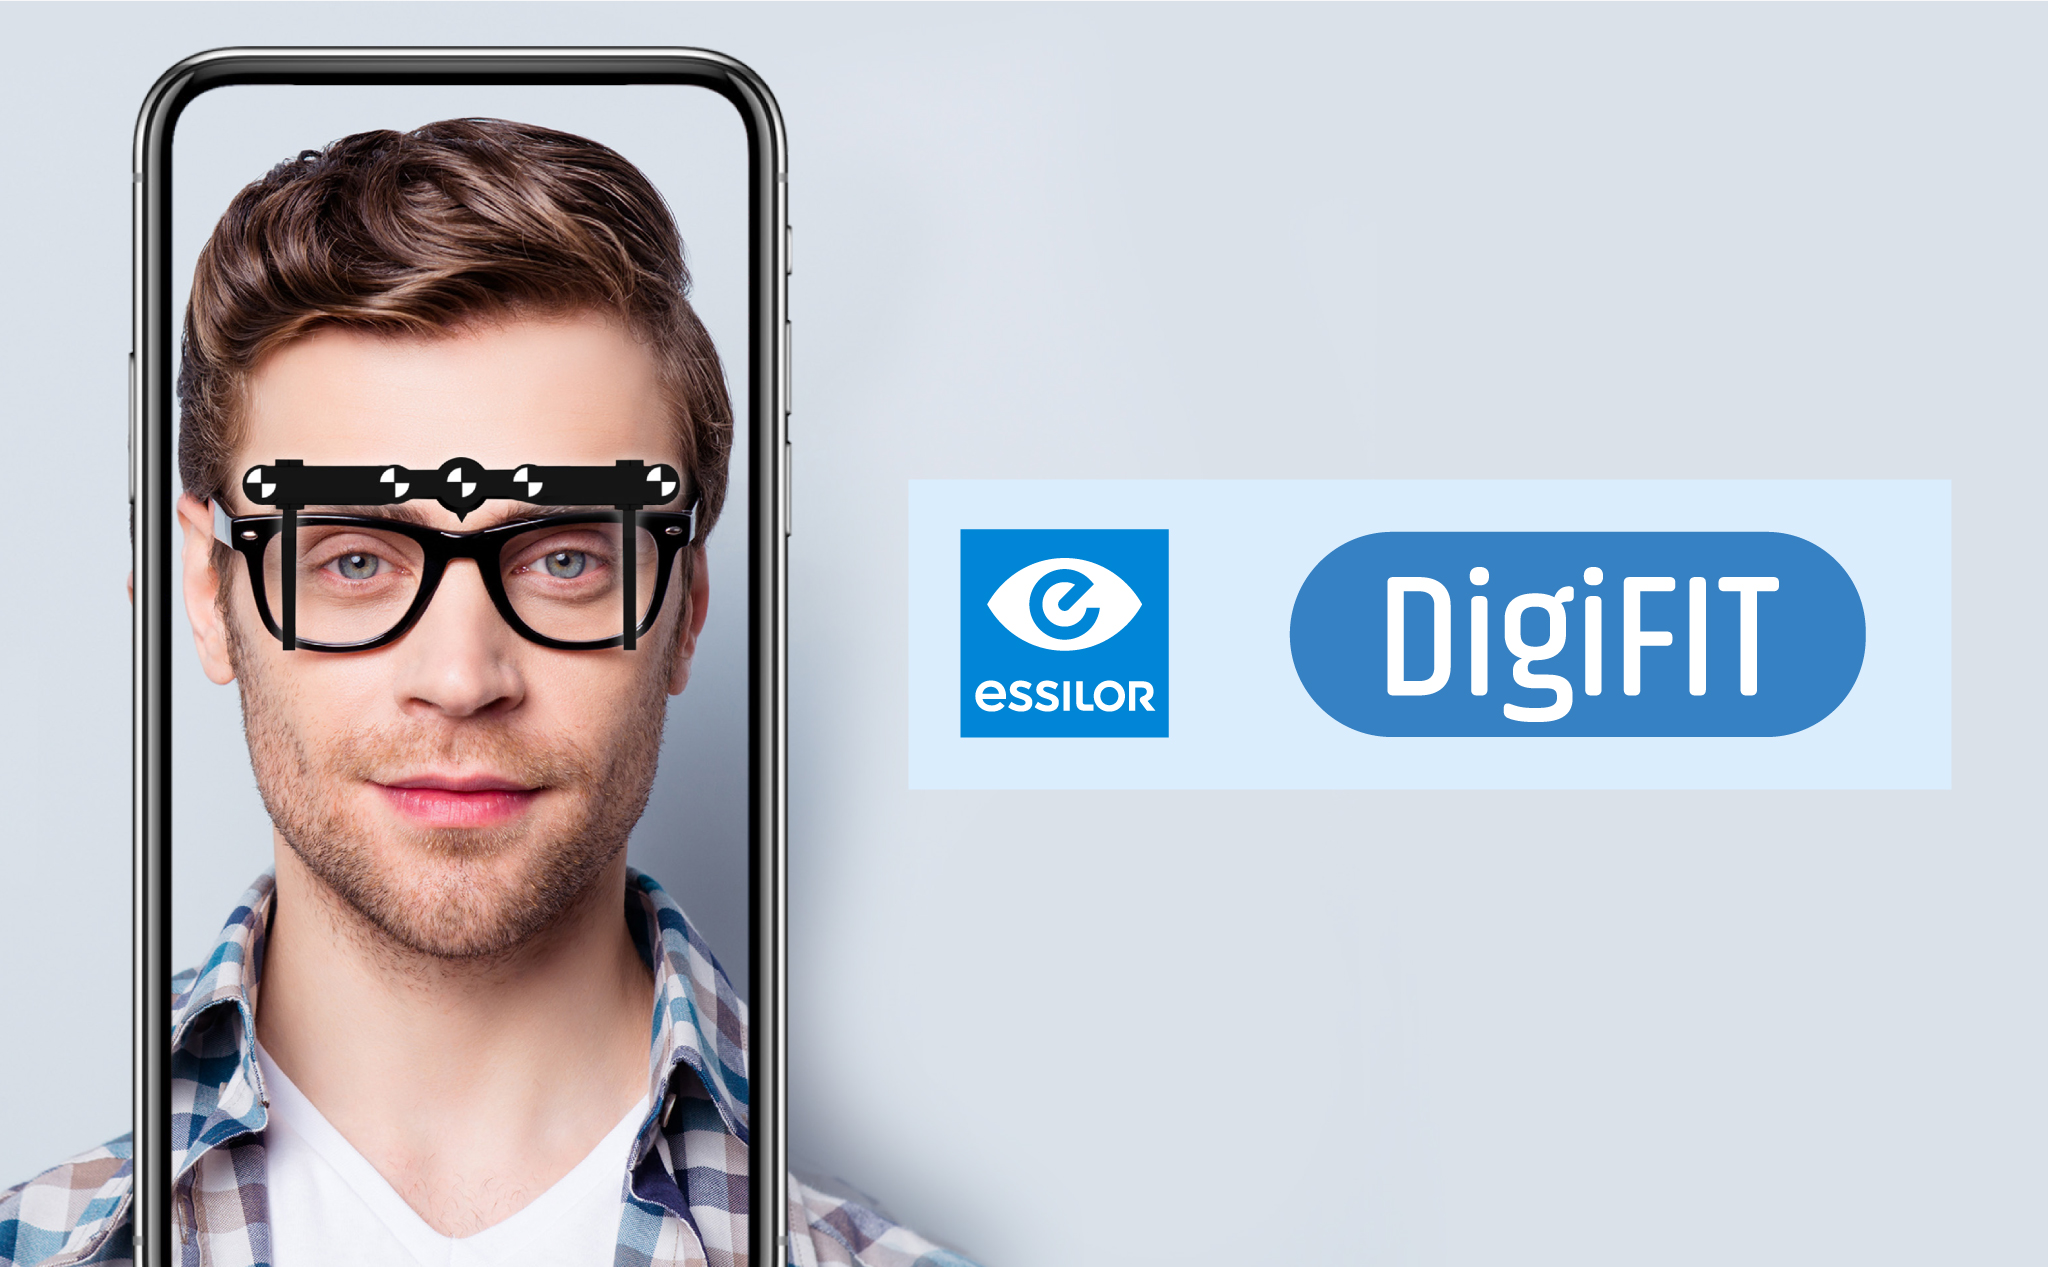 [QC] DigiFit - Áp dụng công nghệ 4.0 cho quy trình đo mắt hiện đại